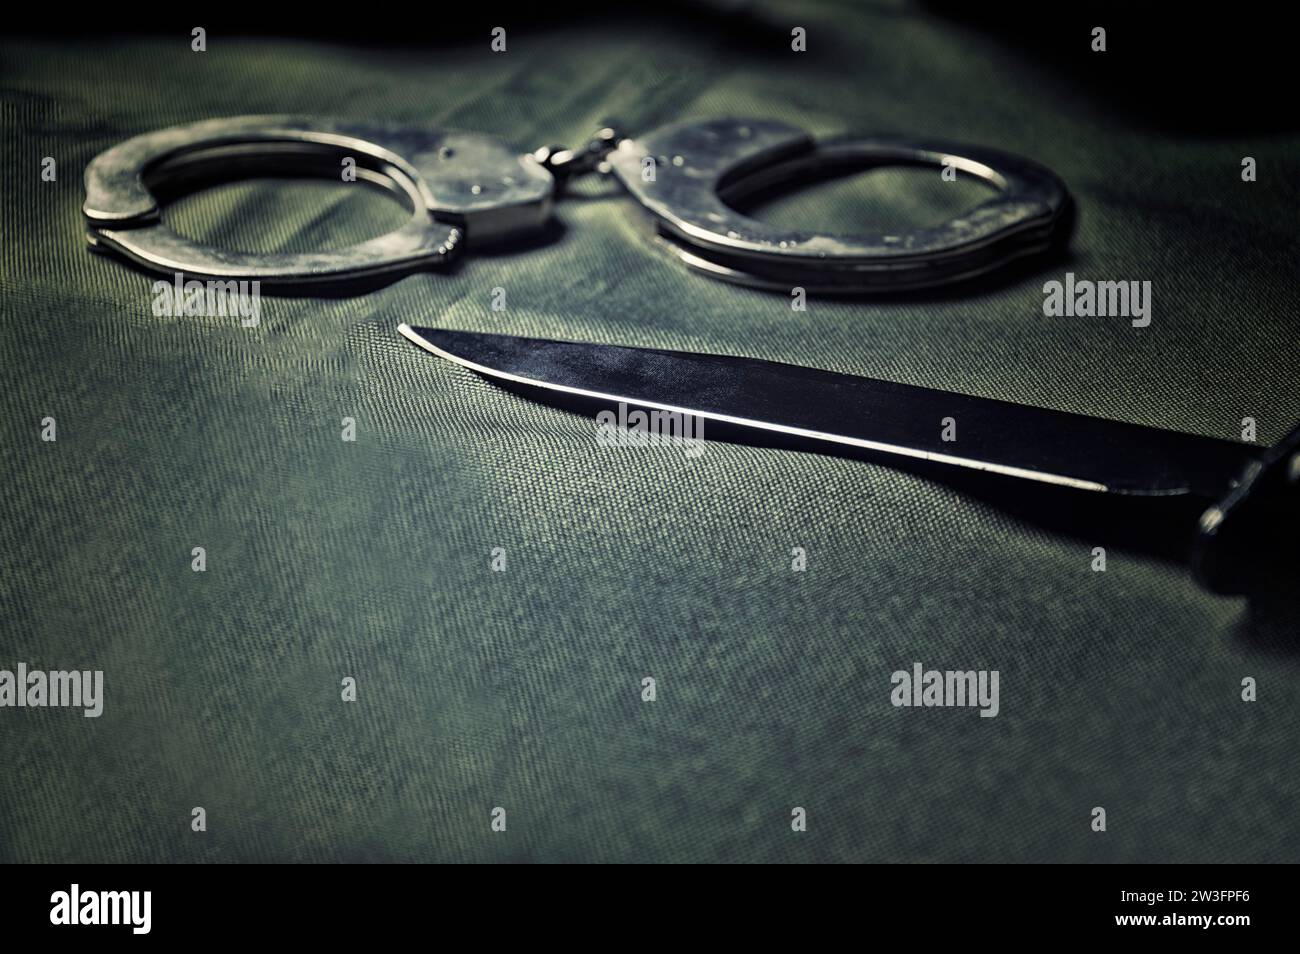 Handschellen und Messer auf einem schwarzen Tisch. Gewalt, Mord, militärisches Konzept. Gemischte Medien Stockfoto